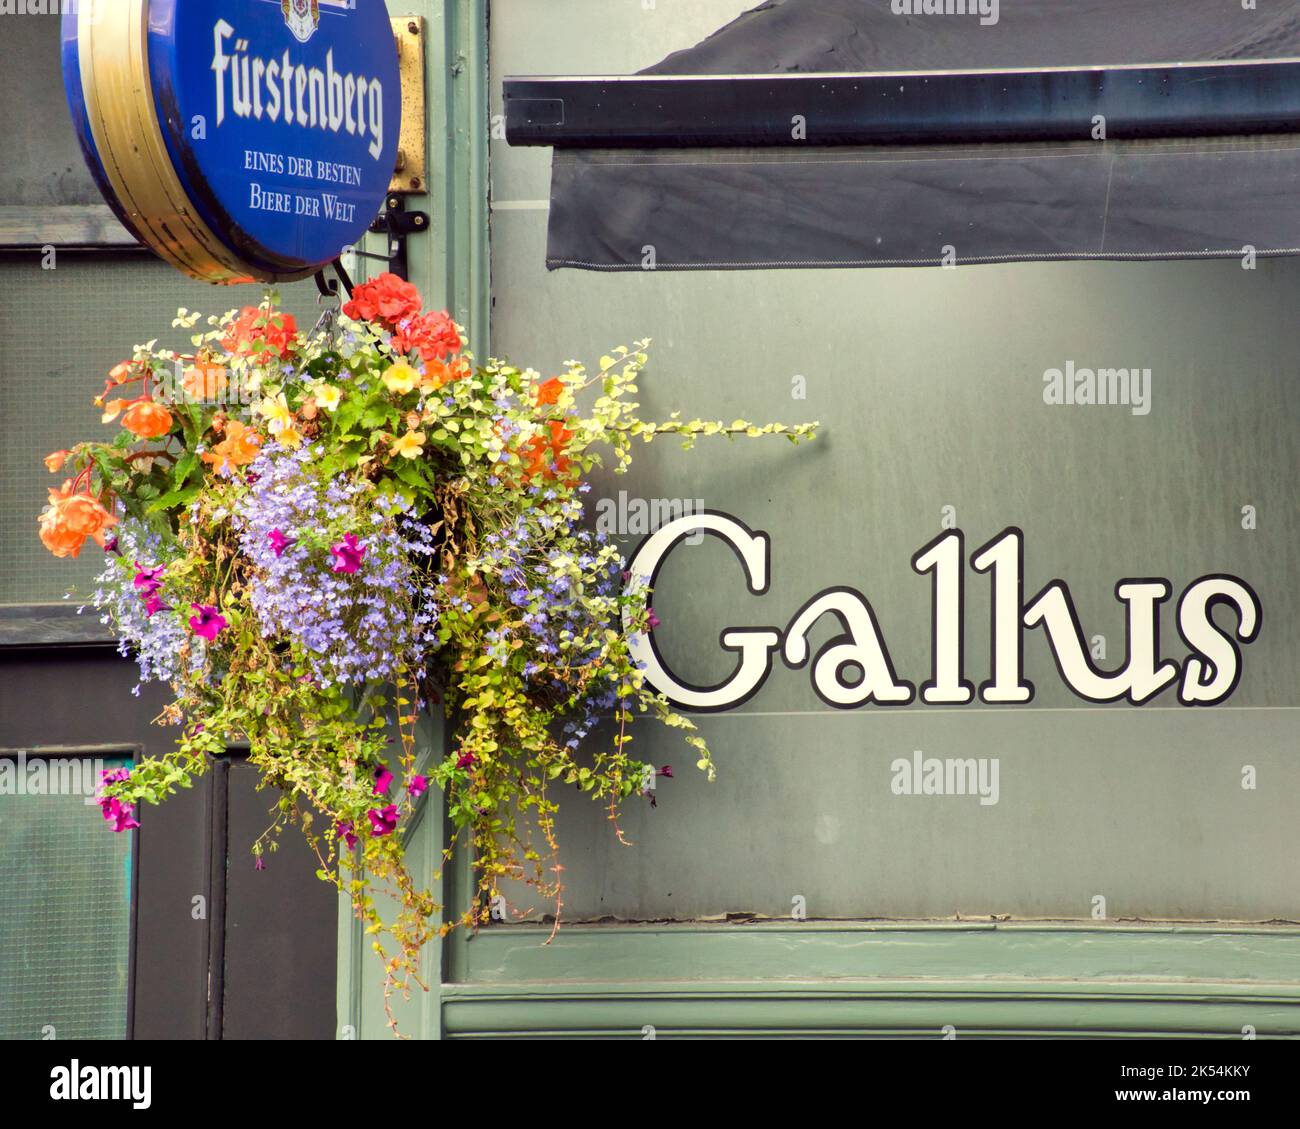 Le nom de Bar Gallus est familier. 80 Dumbarton Road Partick Glasgow G11 6NX. Traduit comme audacieux ou audacieux Banque D'Images